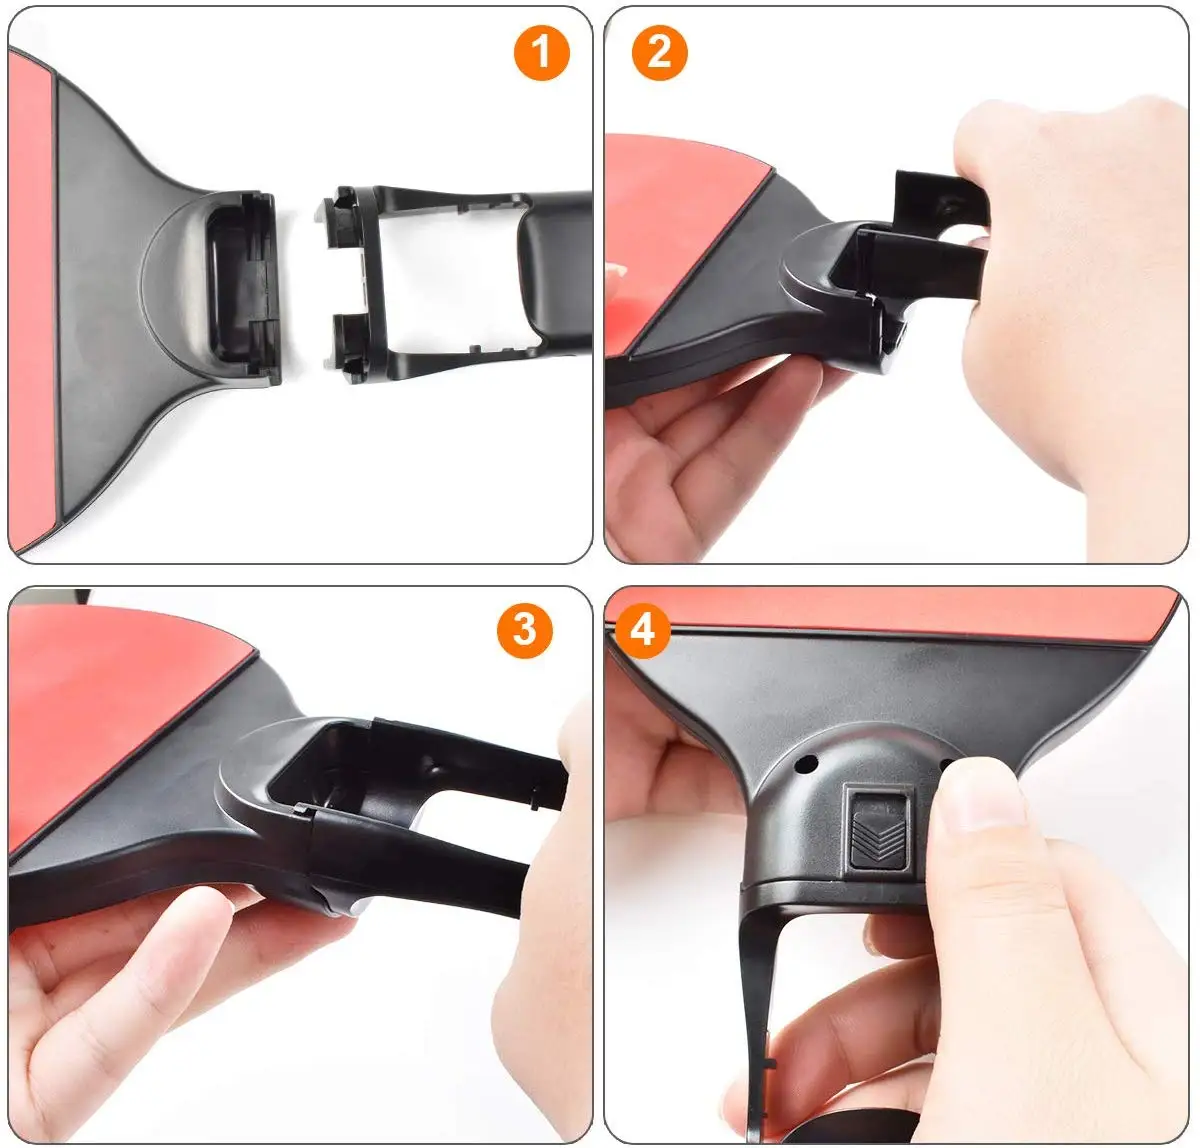 Съемный держатель для рукоятки для Nod Switc Joy-con PingPong ракетка форма дизайн с ремень безопасности для переключателя игры